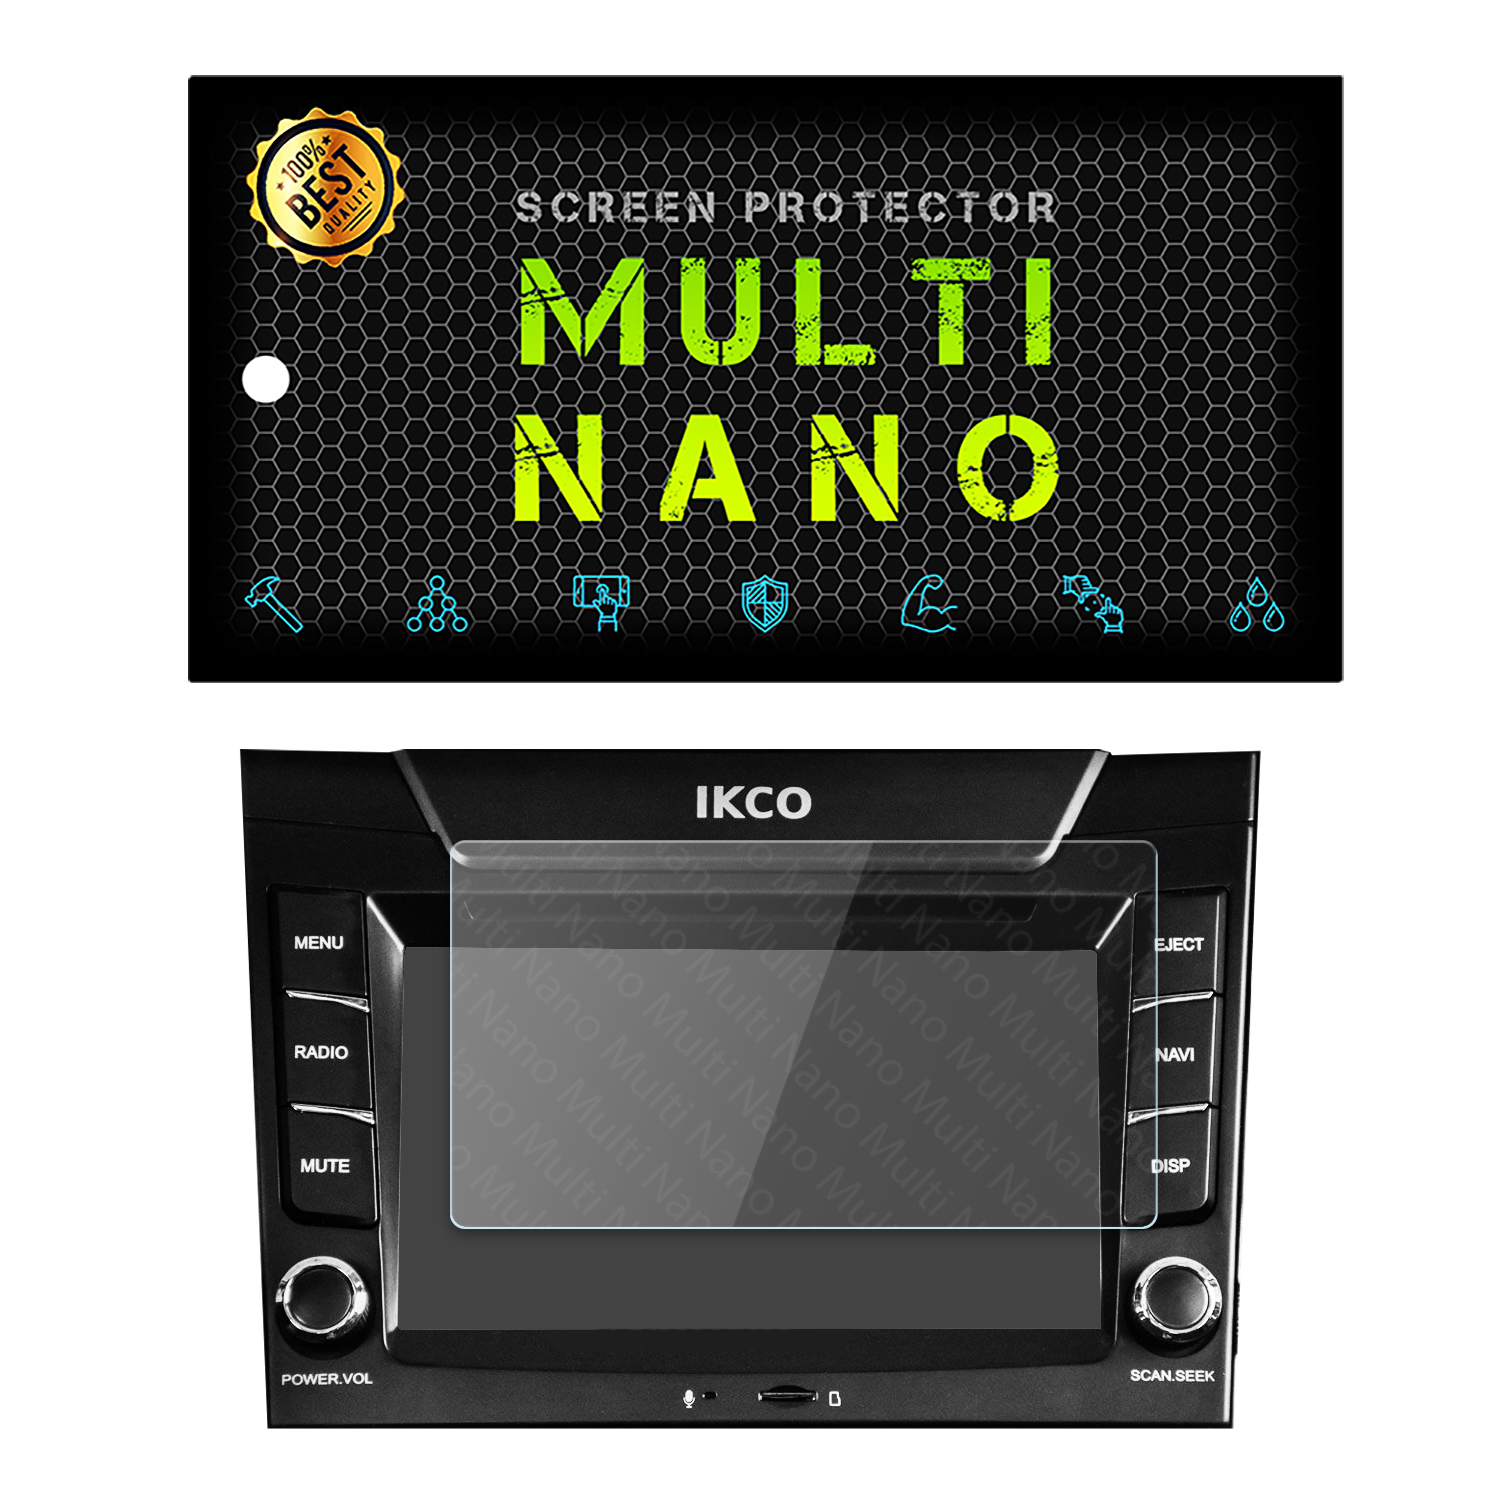 محافظ صفحه نمایش خودرو مولتی نانو مدل X-S1N مناسب برای دنا پلاس